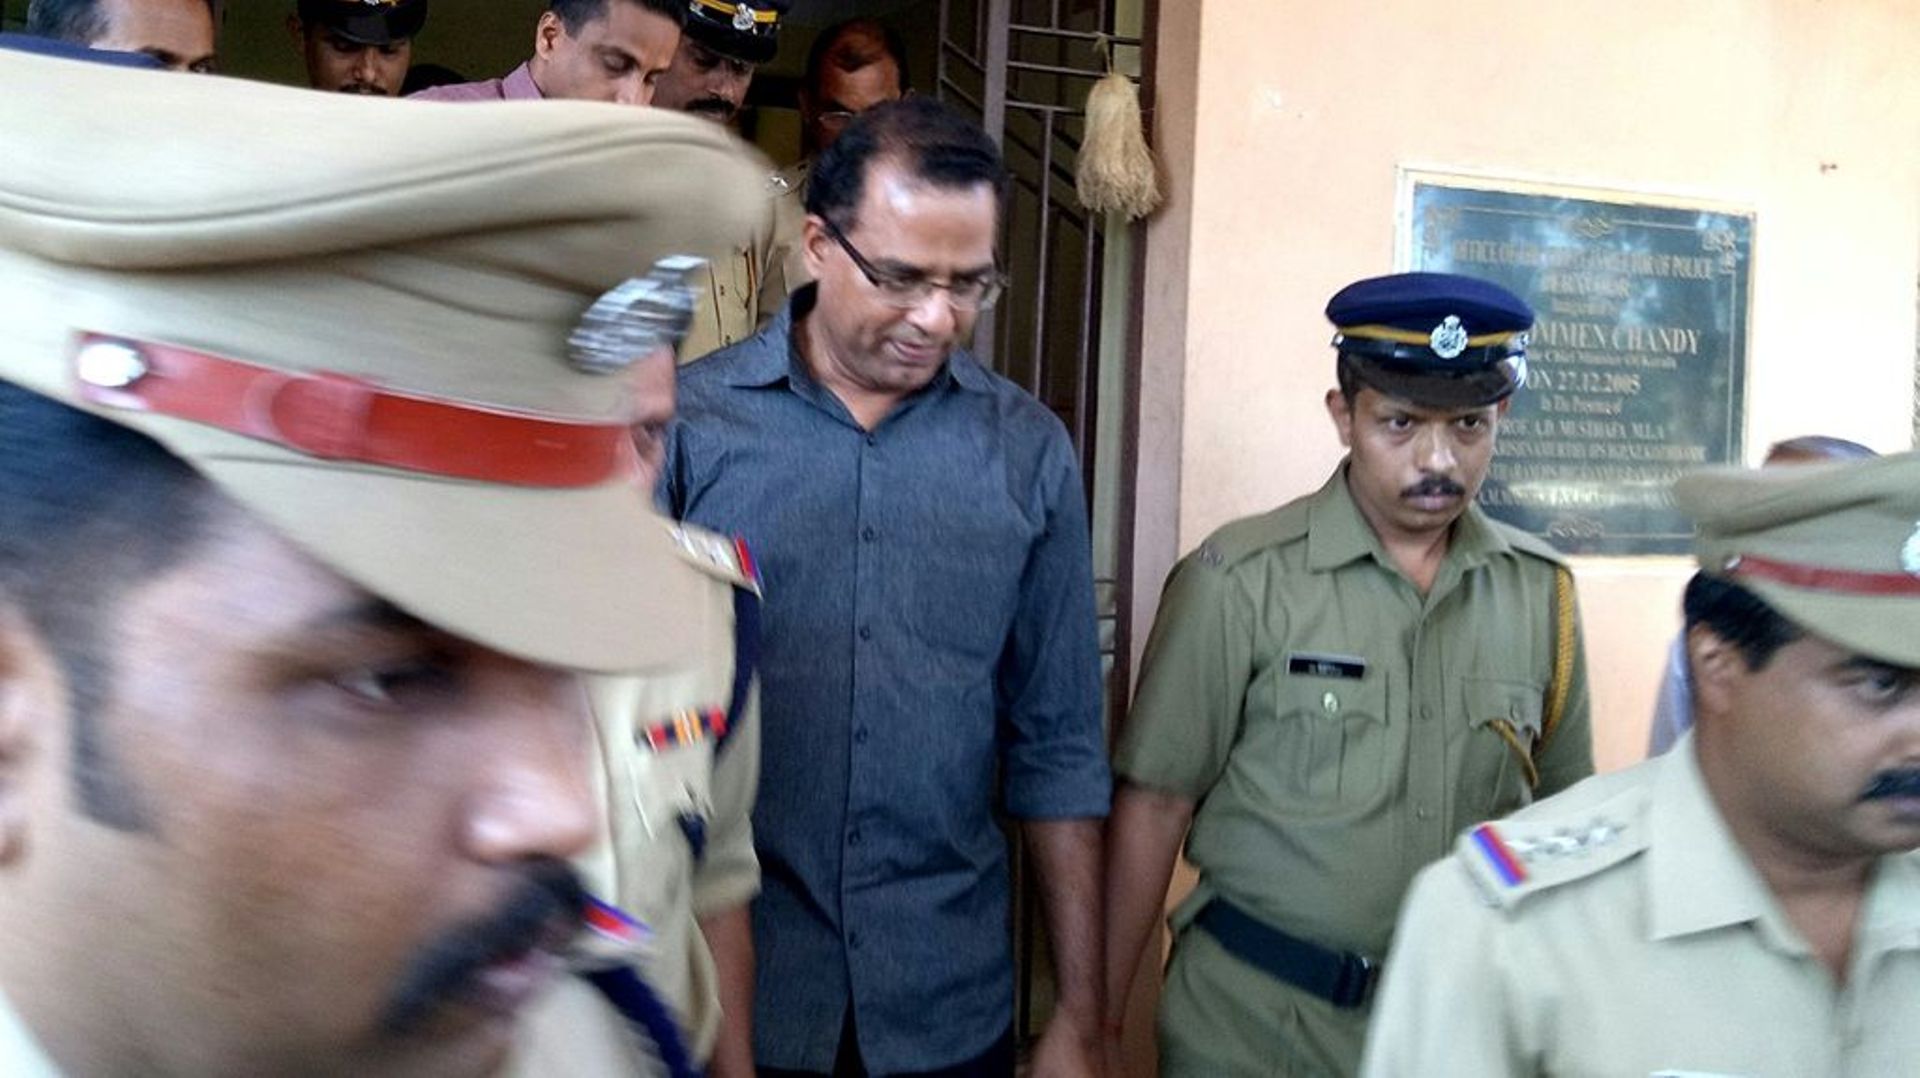 Robin Vadakkumchery escorté par des policiers après son arrestation, le 28 février 2017 à Peravoor, dans le sud de l'Inde